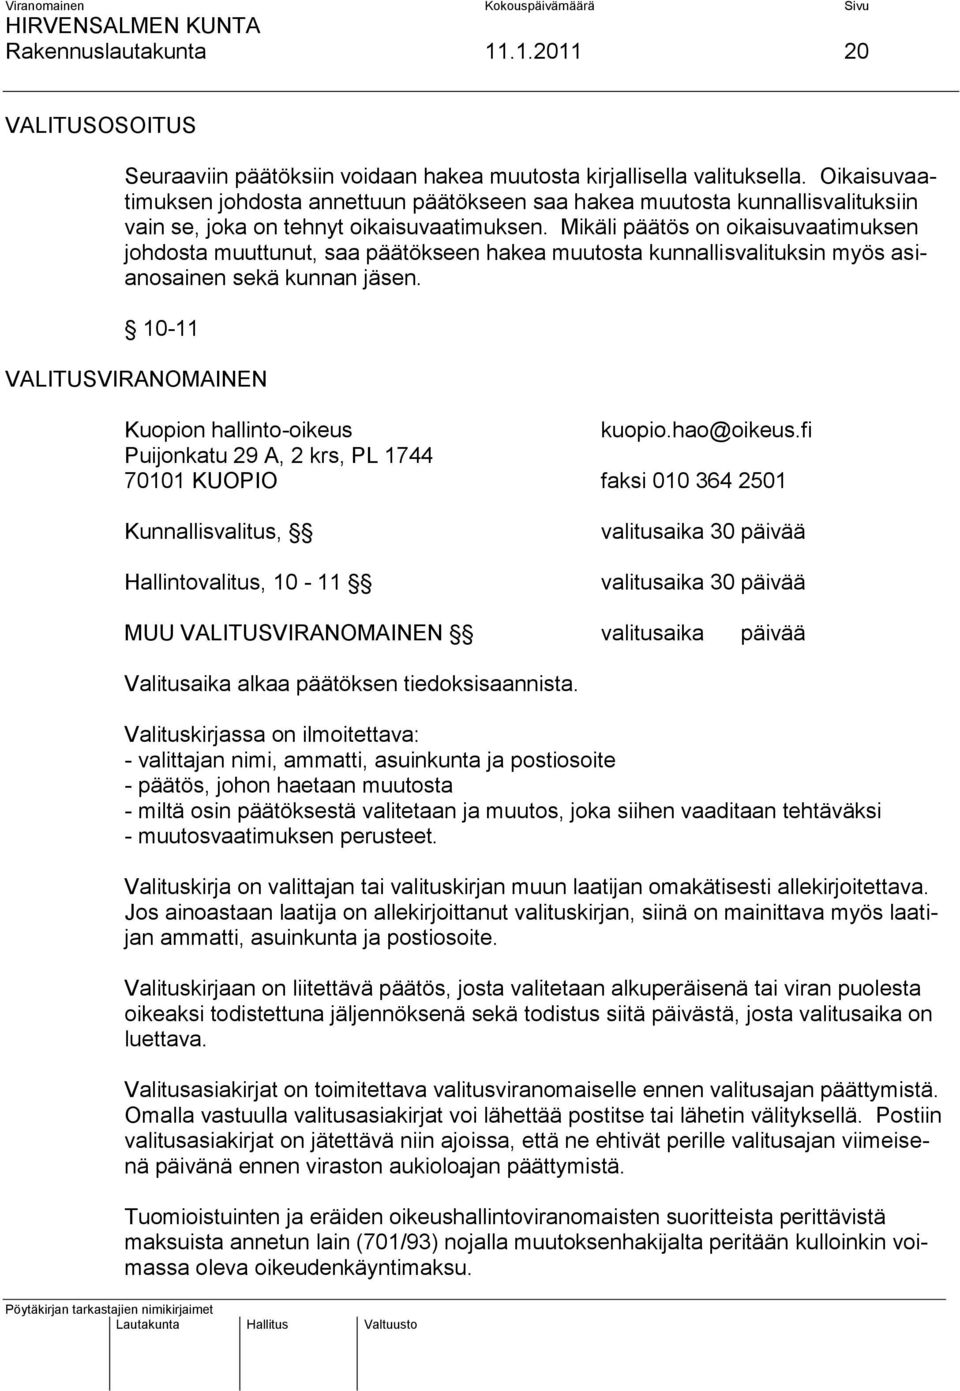 Mikäli päätös on oikaisuvaatimuksen johdosta muuttunut, saa päätökseen hakea muutosta kunnallisvalituksin myös asianosainen sekä kunnan jäsen. 10-11 VALITUSVIRANOMAINEN Kuopion hallinto-oikeus kuopio.